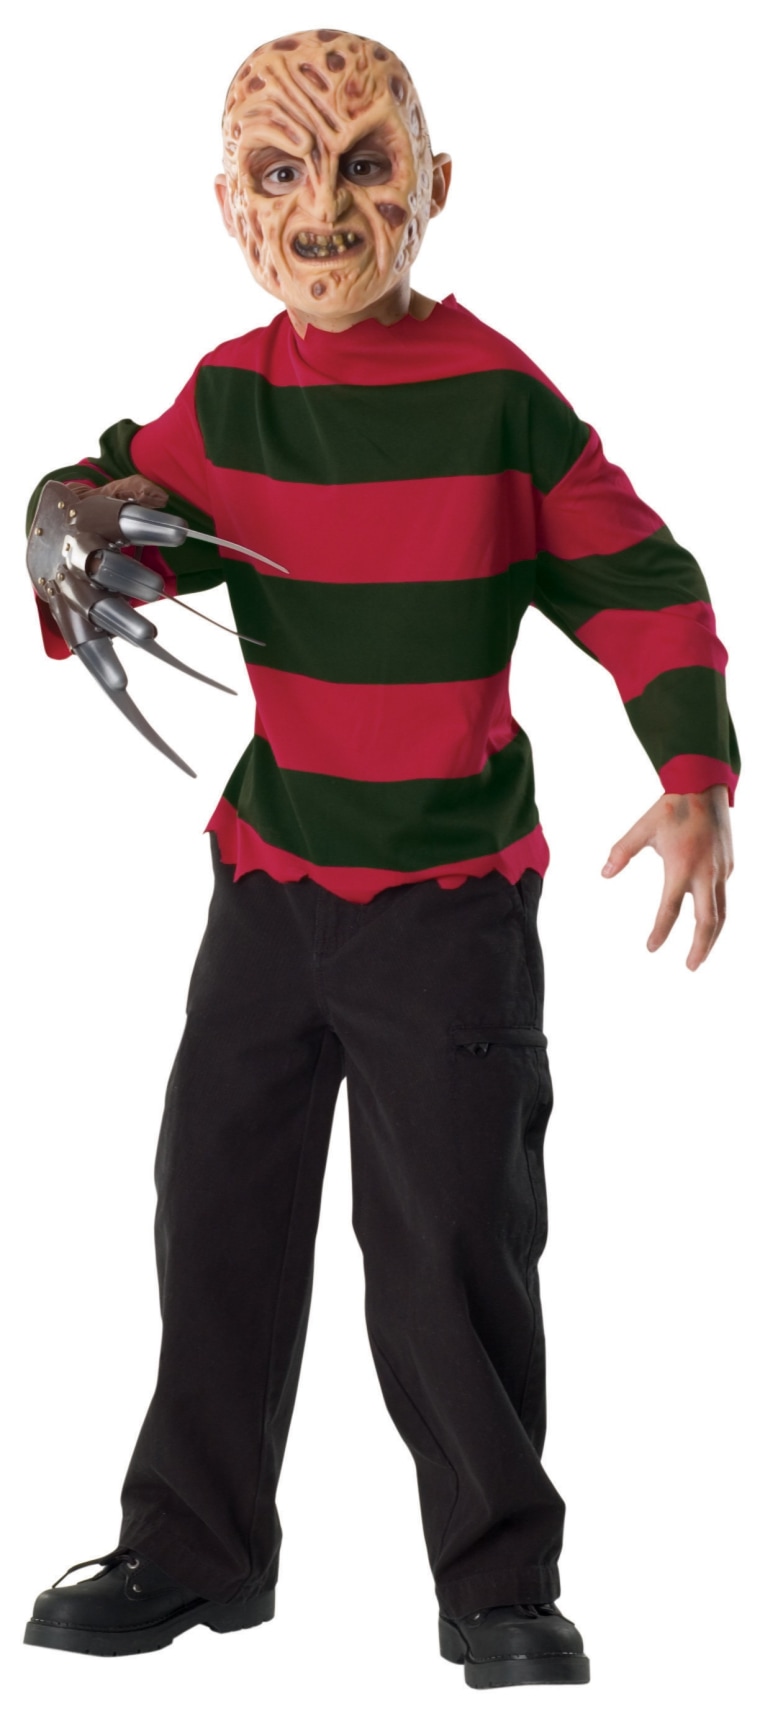 Image: Freddy Kruger costume